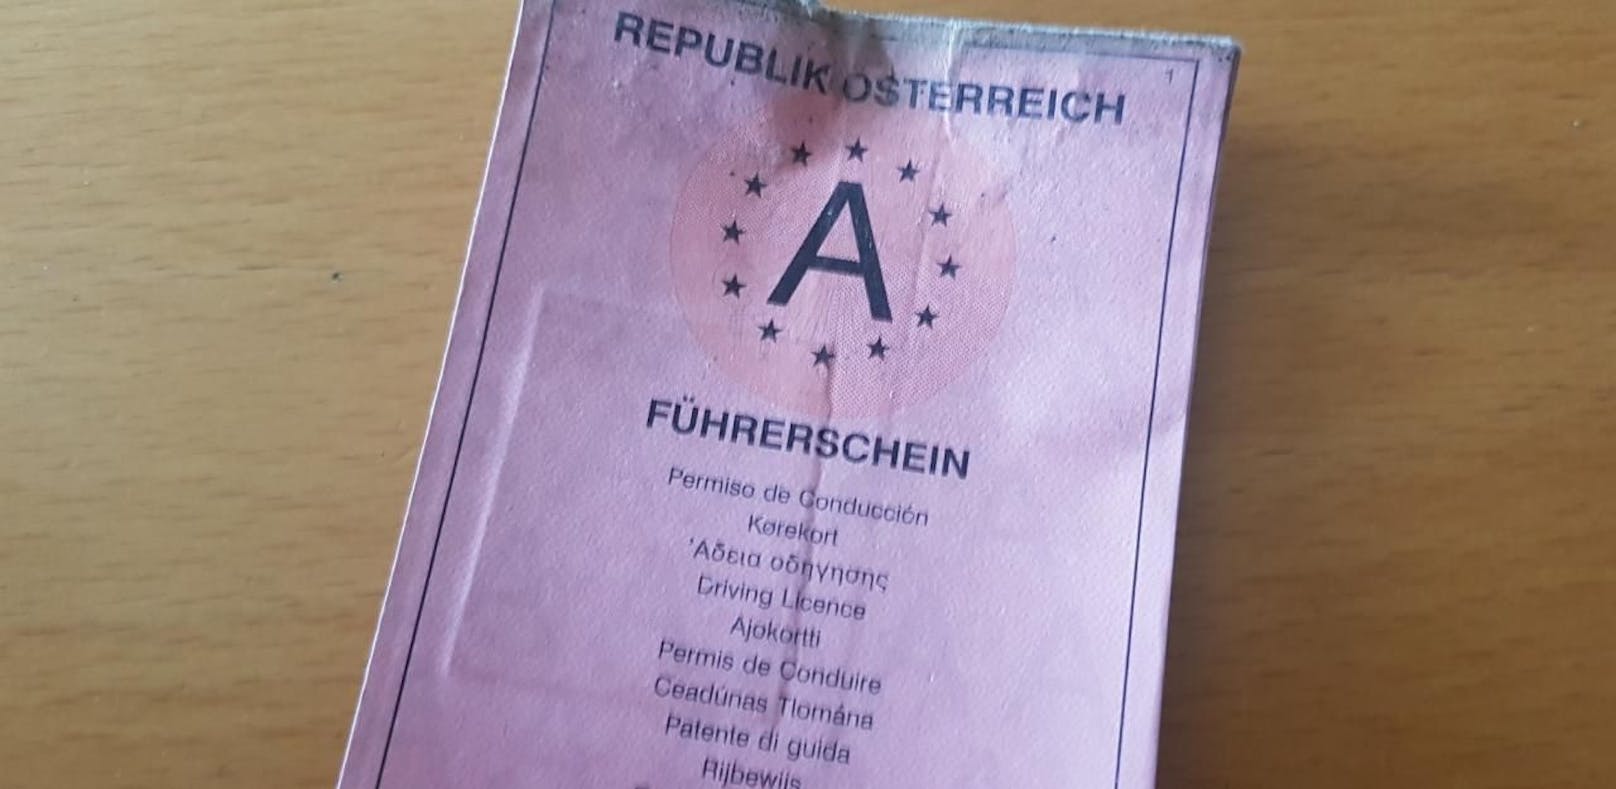 Symbolbild eines österreichischen Führerscheins.